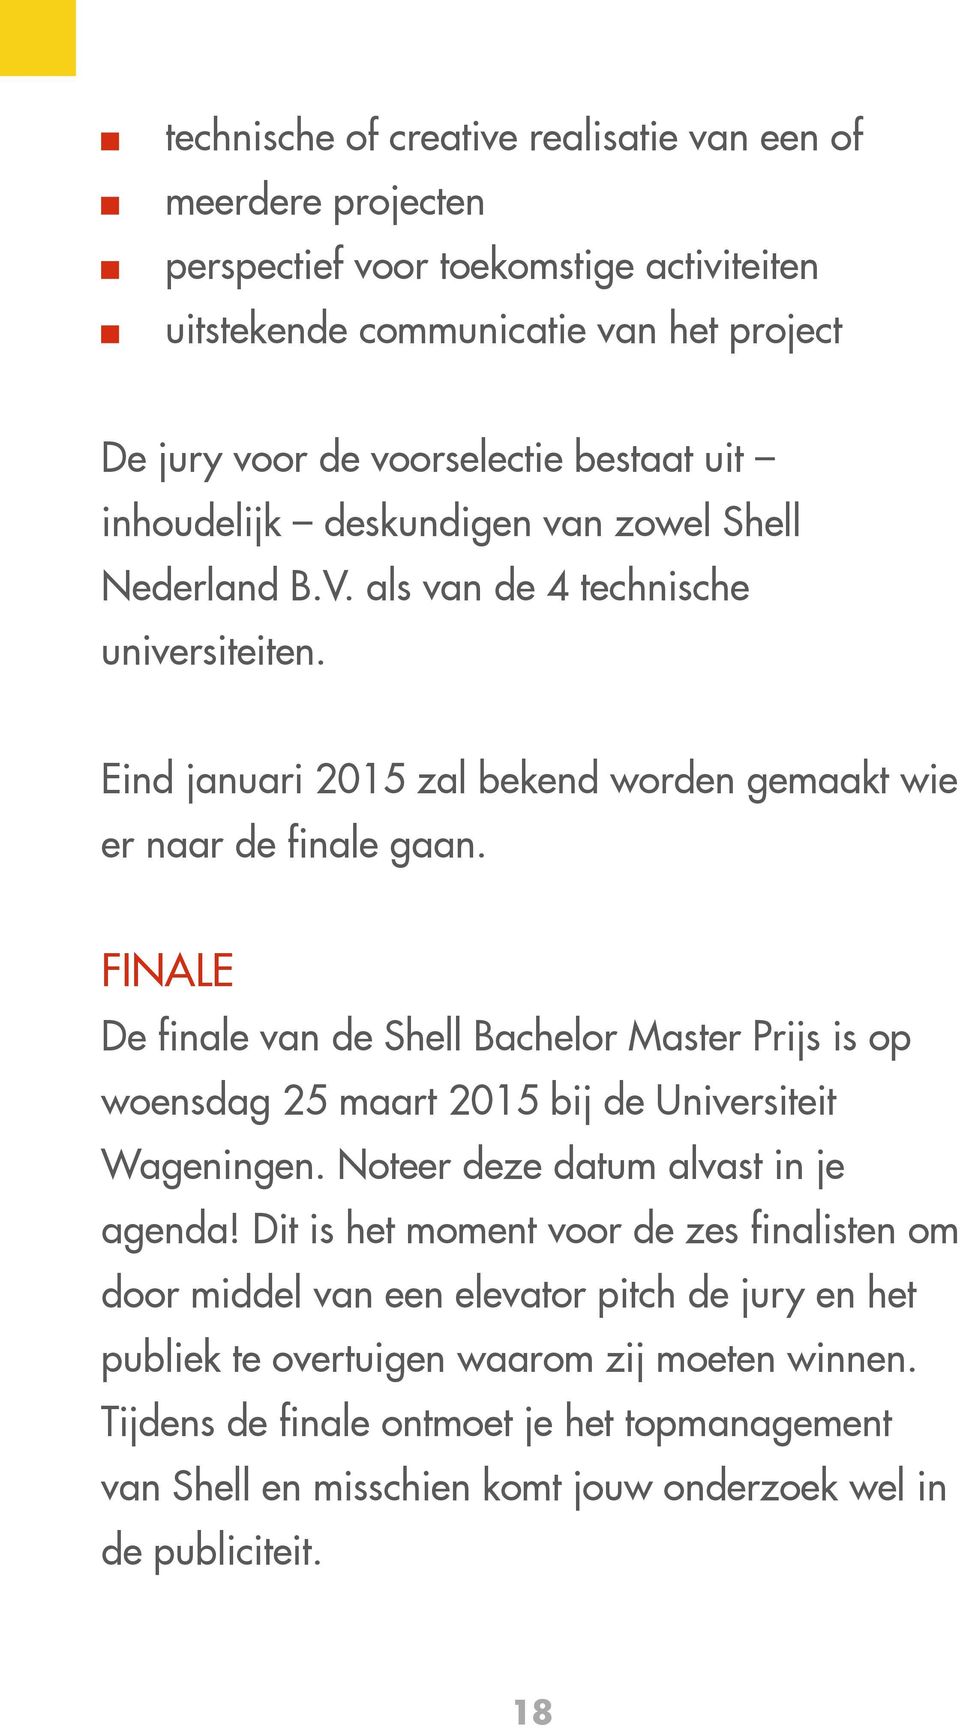 FINALE De finale van de Shell Bachelor Master Prijs is op woensdag 25 maart 2015 bij de Universiteit Wageningen. Noteer deze datum alvast in je agenda!